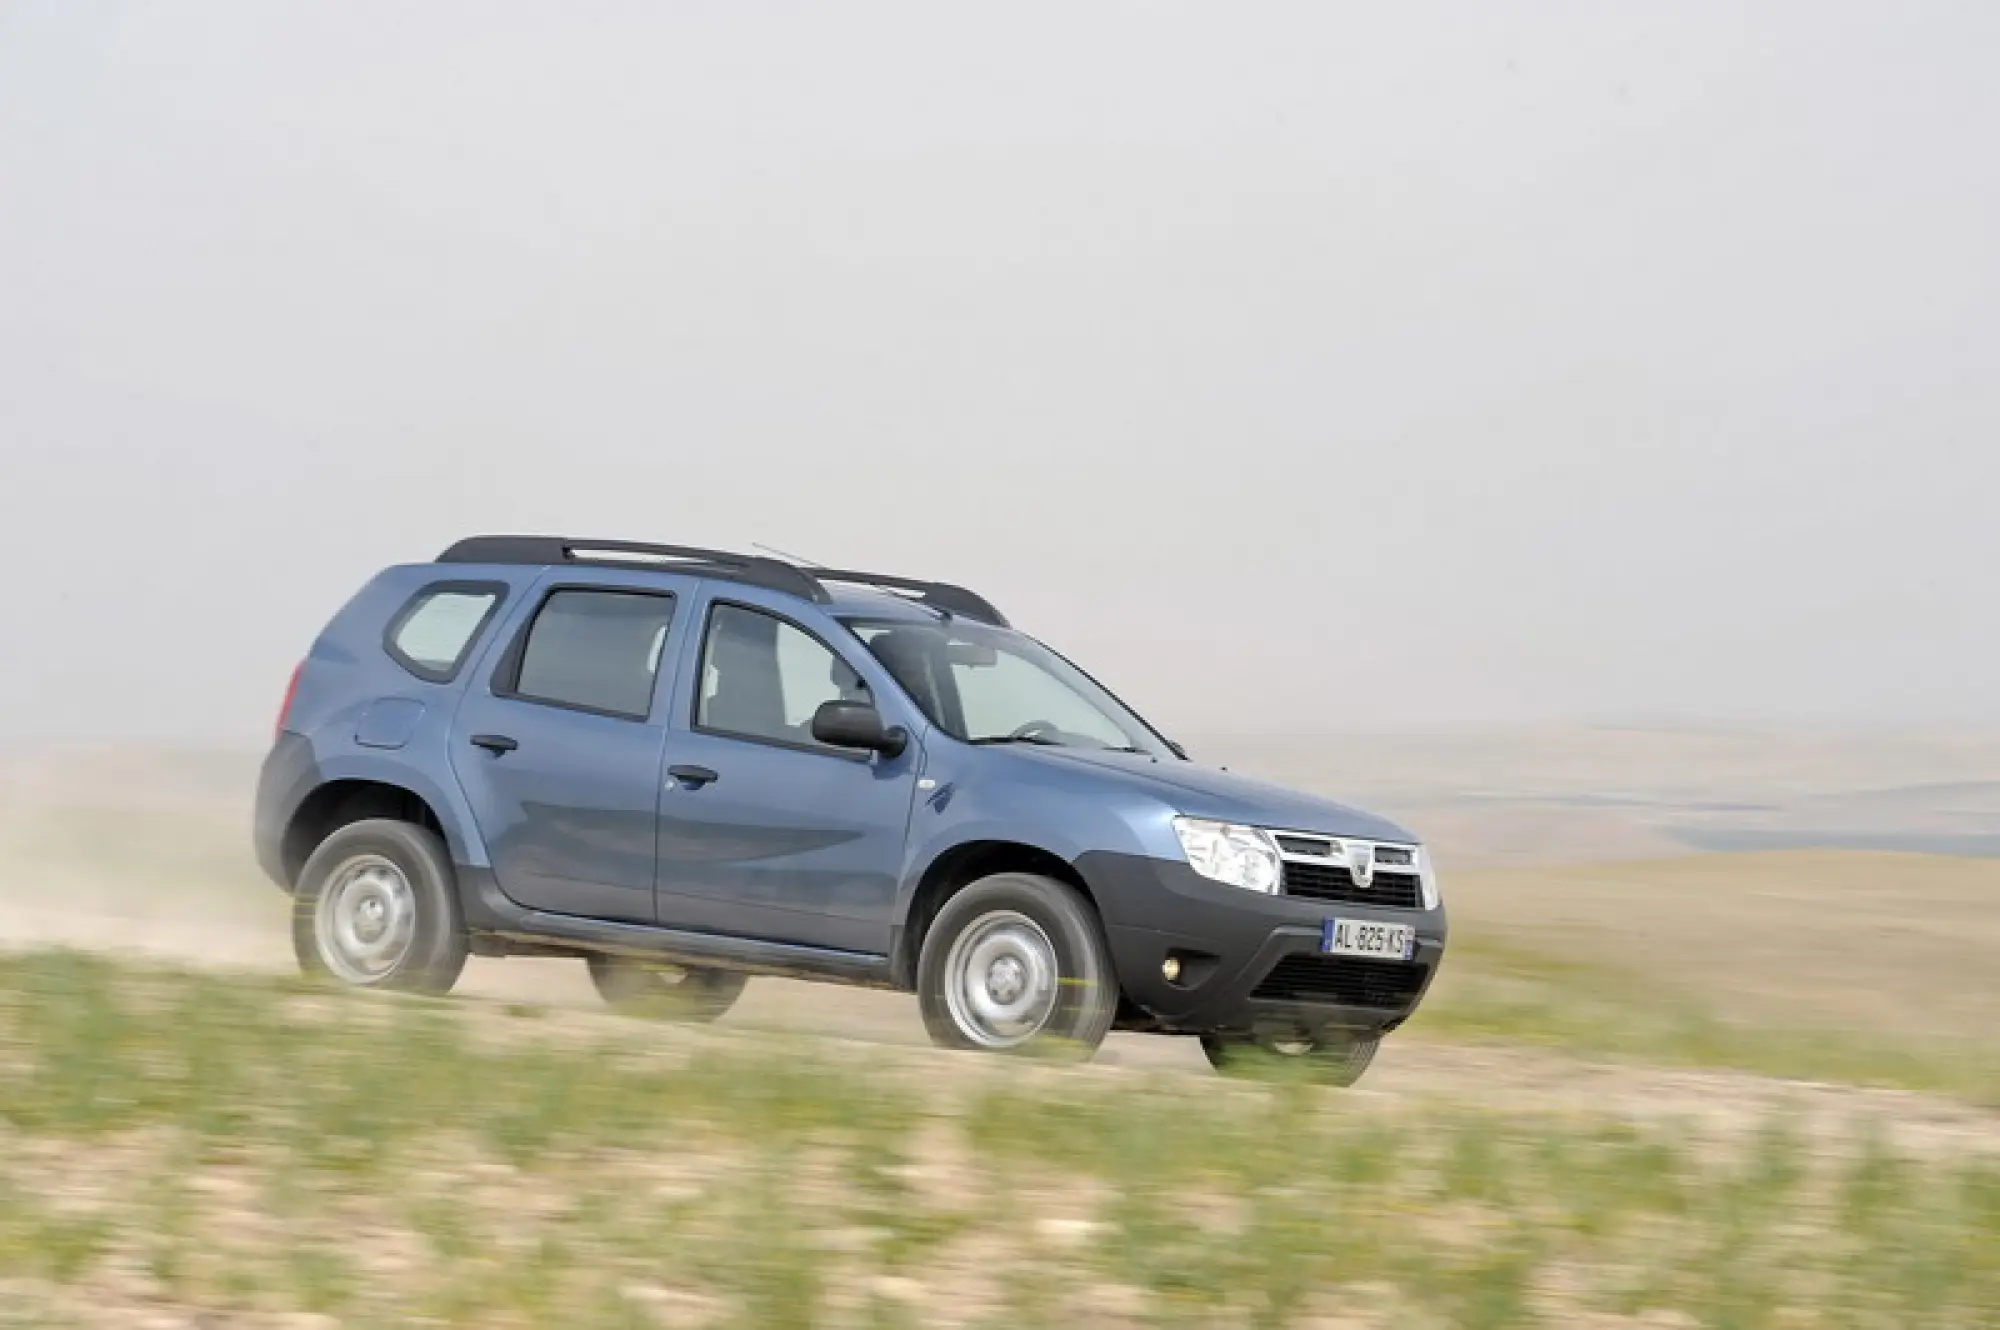 Dacia Duster in Marocco - 5